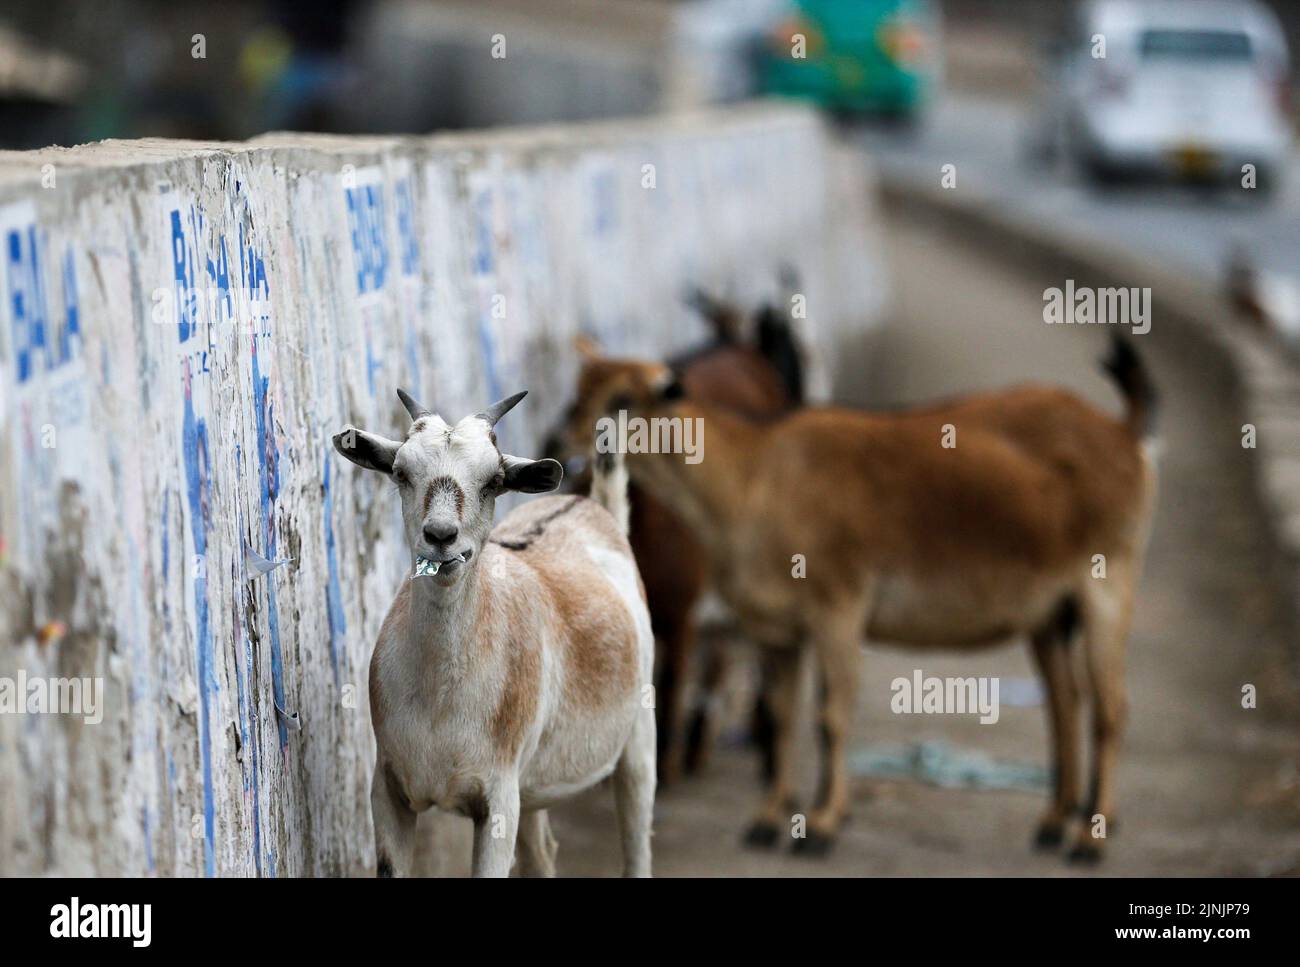 Los carteles de la campaña Goats Eat se pegaron en una pared después de las elecciones generales realizadas por la Comisión Electoral Independiente y de Fronteras (IEBC) en Nairobi, Kenia, el 12 de agosto de 2022. REUTERS/Thomas Mukoya TPX IMÁGENES DEL DÍA Foto de stock